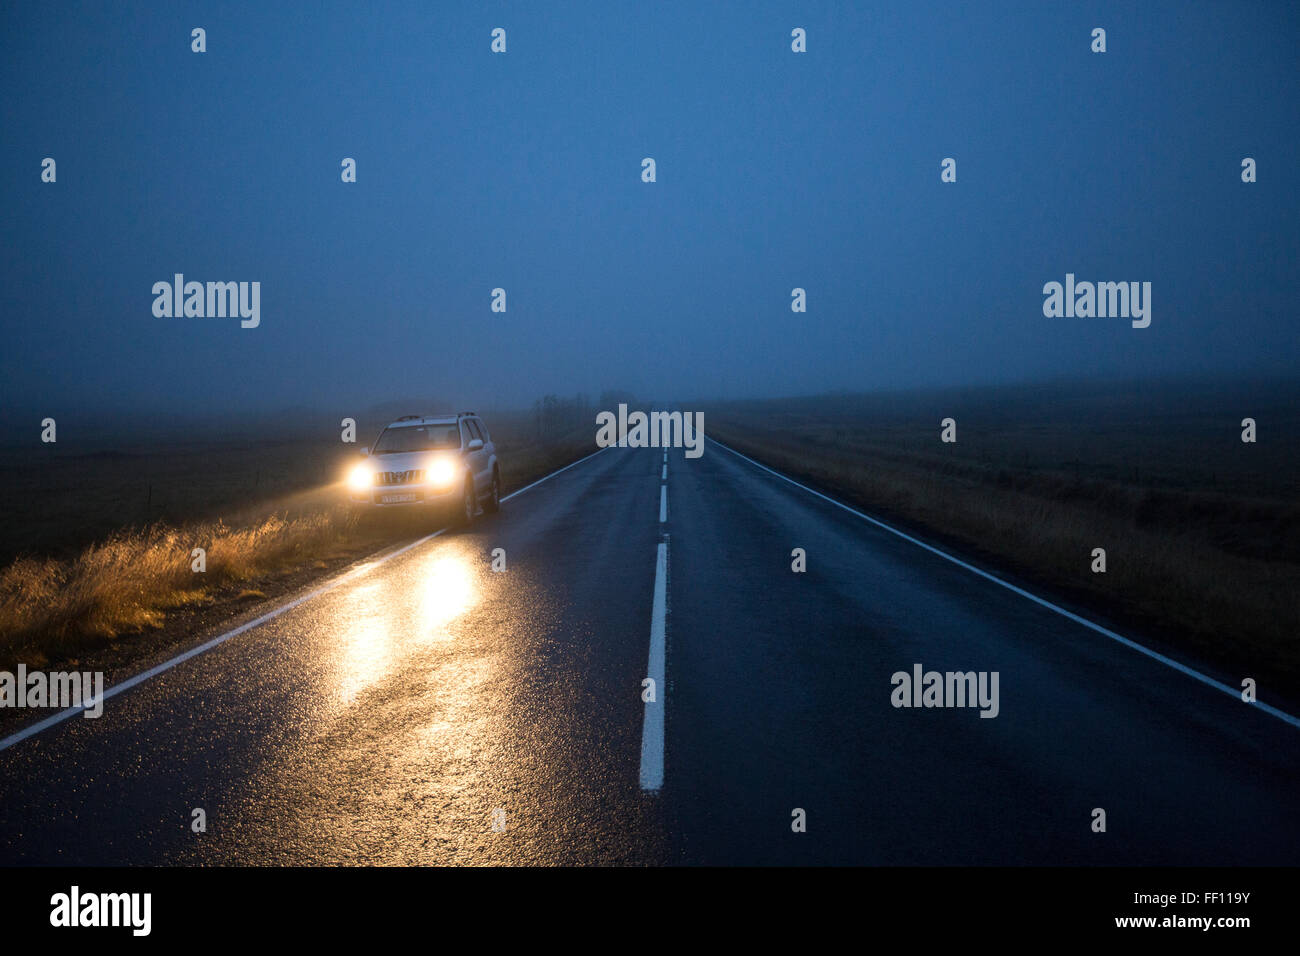 Blaues Auto mit lustigen Wimpern auf Lampe Stockfotografie - Alamy